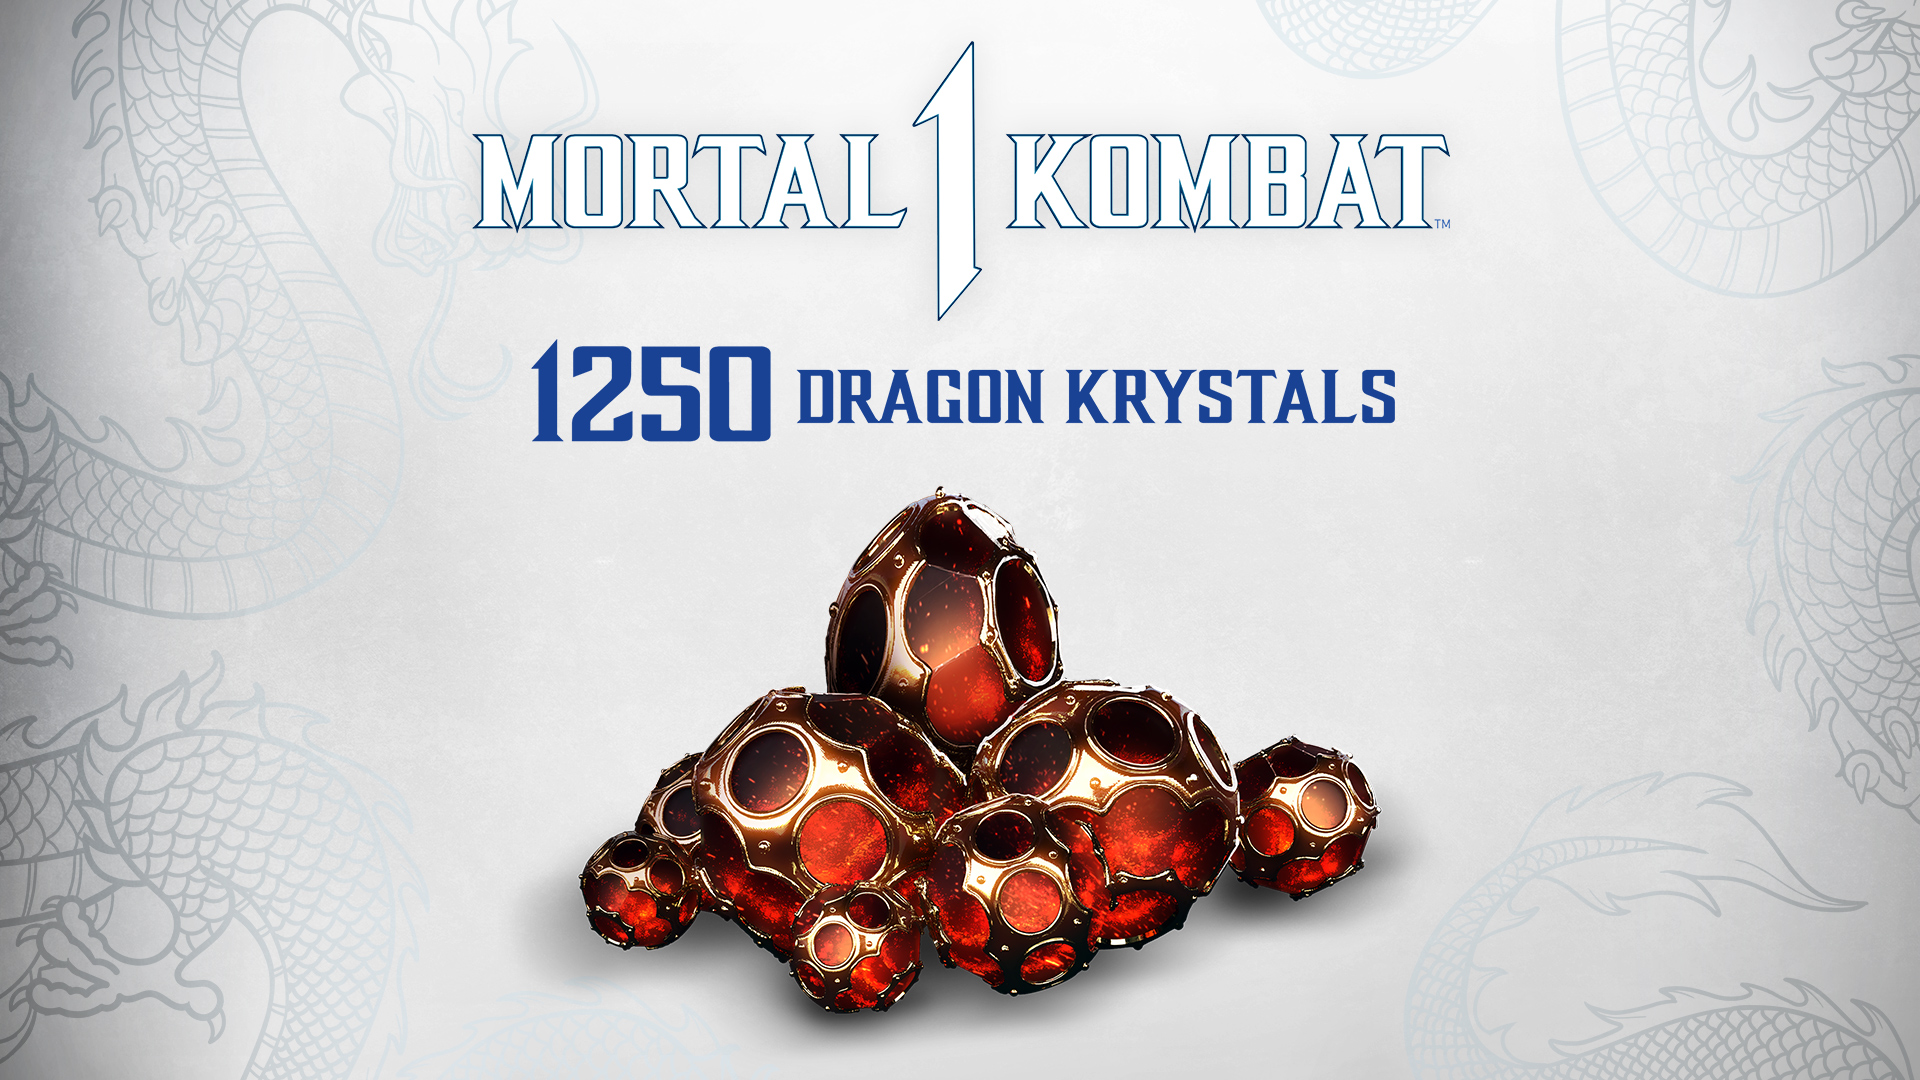 Mortal Kombat 1 - 1250 Dragon Krystals DLC EU PS5 CD Key 7.68 $